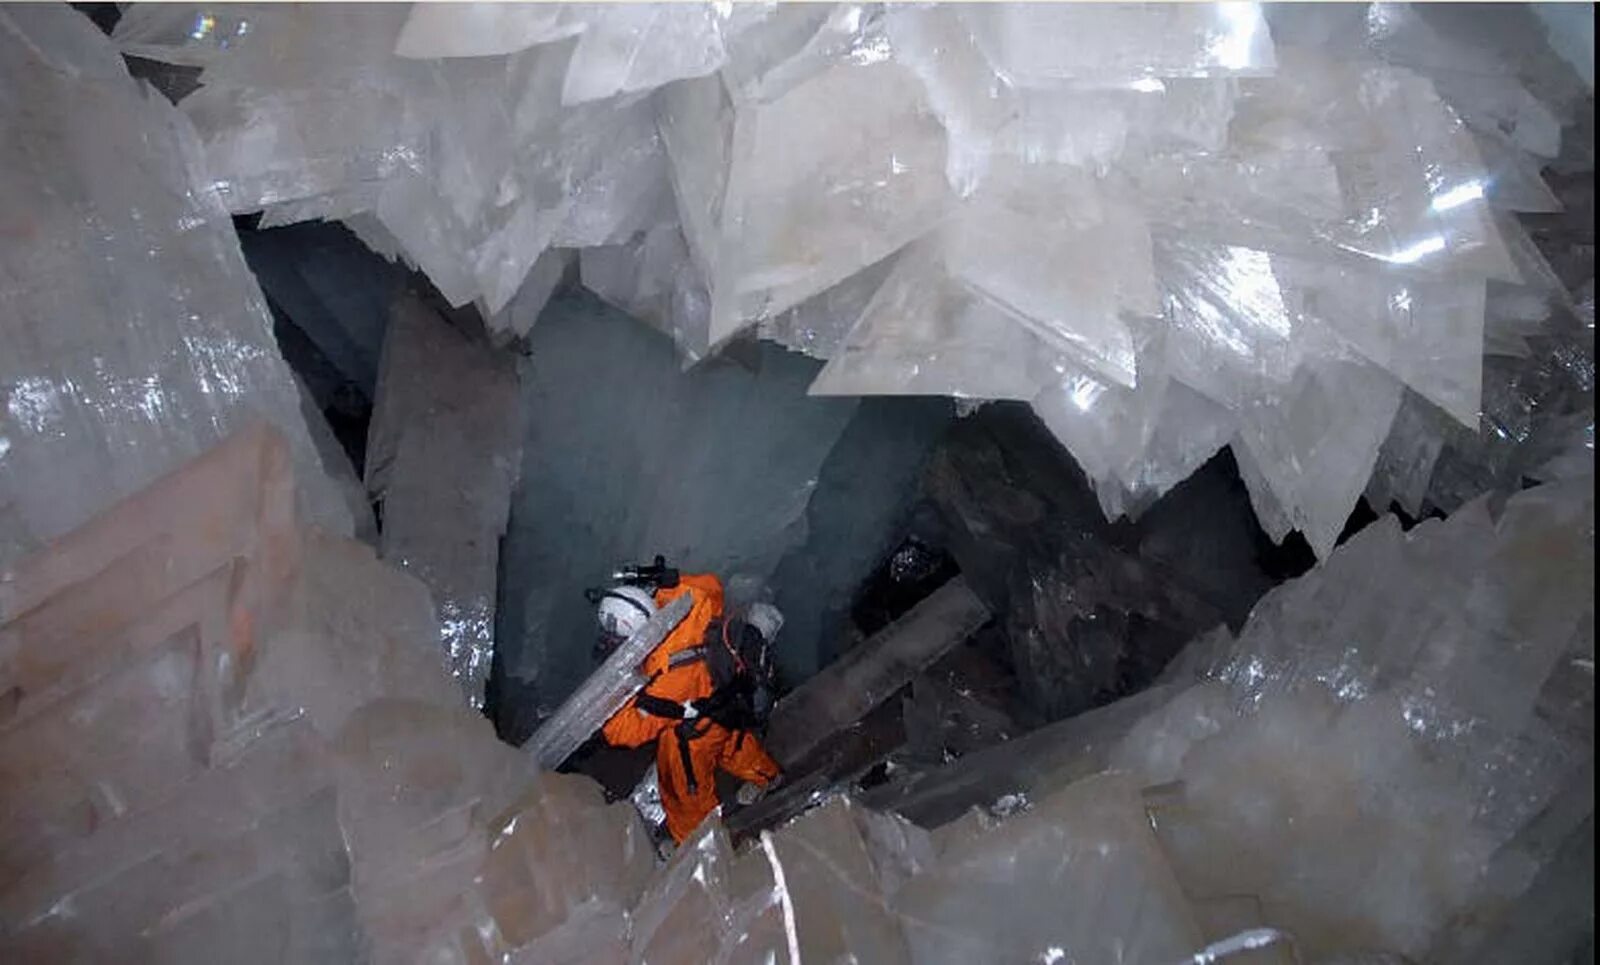 Кристалл шахты. Пещера кристаллов гигантов в Мексике. Пещера кристаллов (Cueva de los cristales), Мексика. Пещера Куэва де Лос Кристалес. Пещера гигантских кристаллов Найка, Мексика.